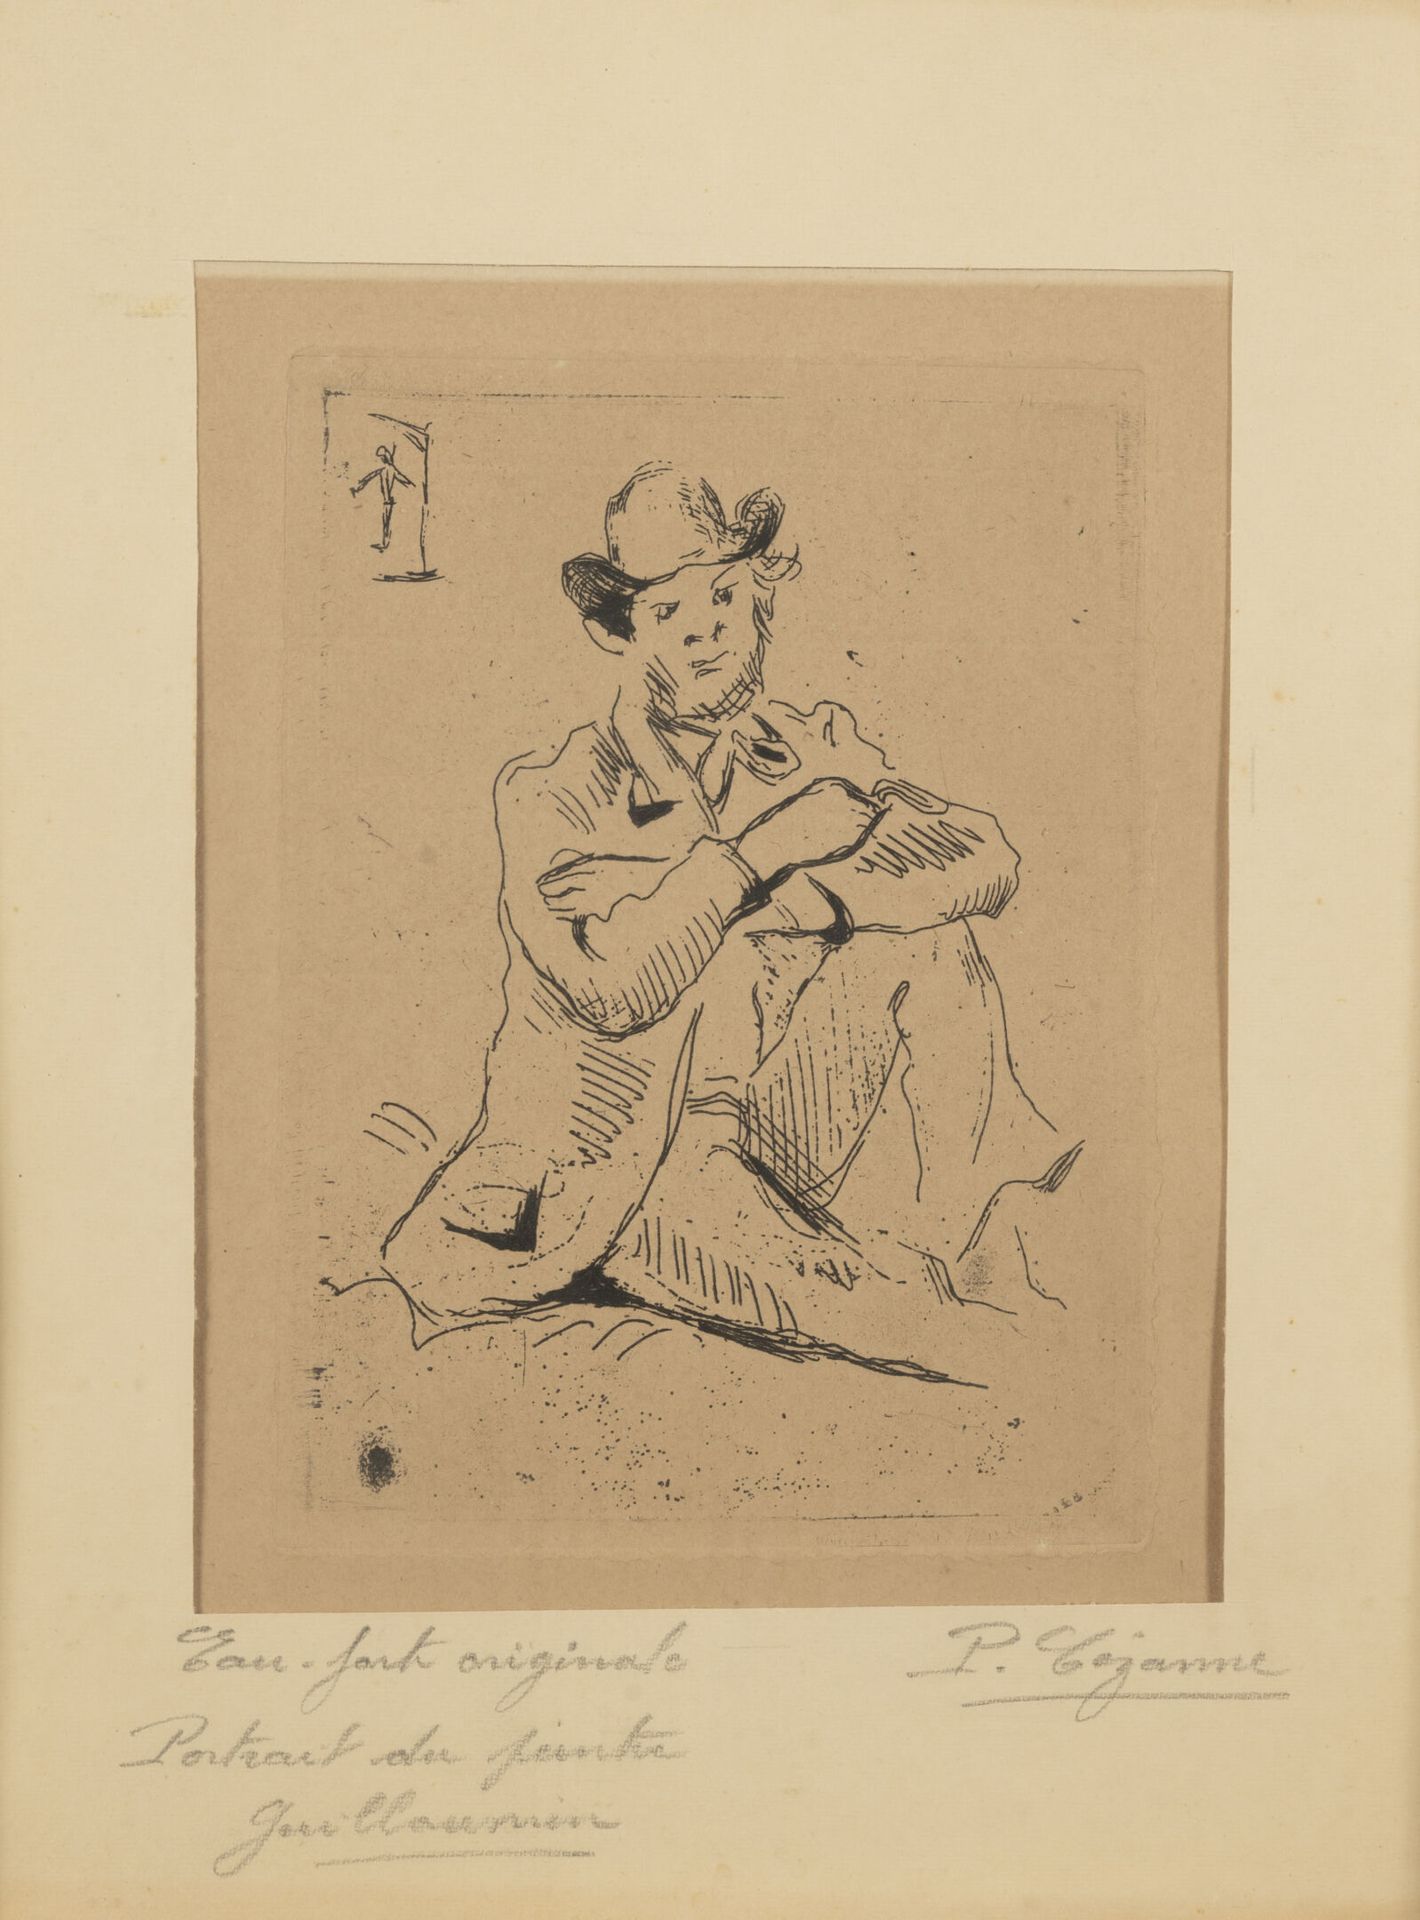 D'après Paul CEZANNE (1839-1906) 画家纪尧姆与被吊死者的肖像。

蚀刻。

右下方有签名。

左下角有注解和标题。

16 x &hellip;